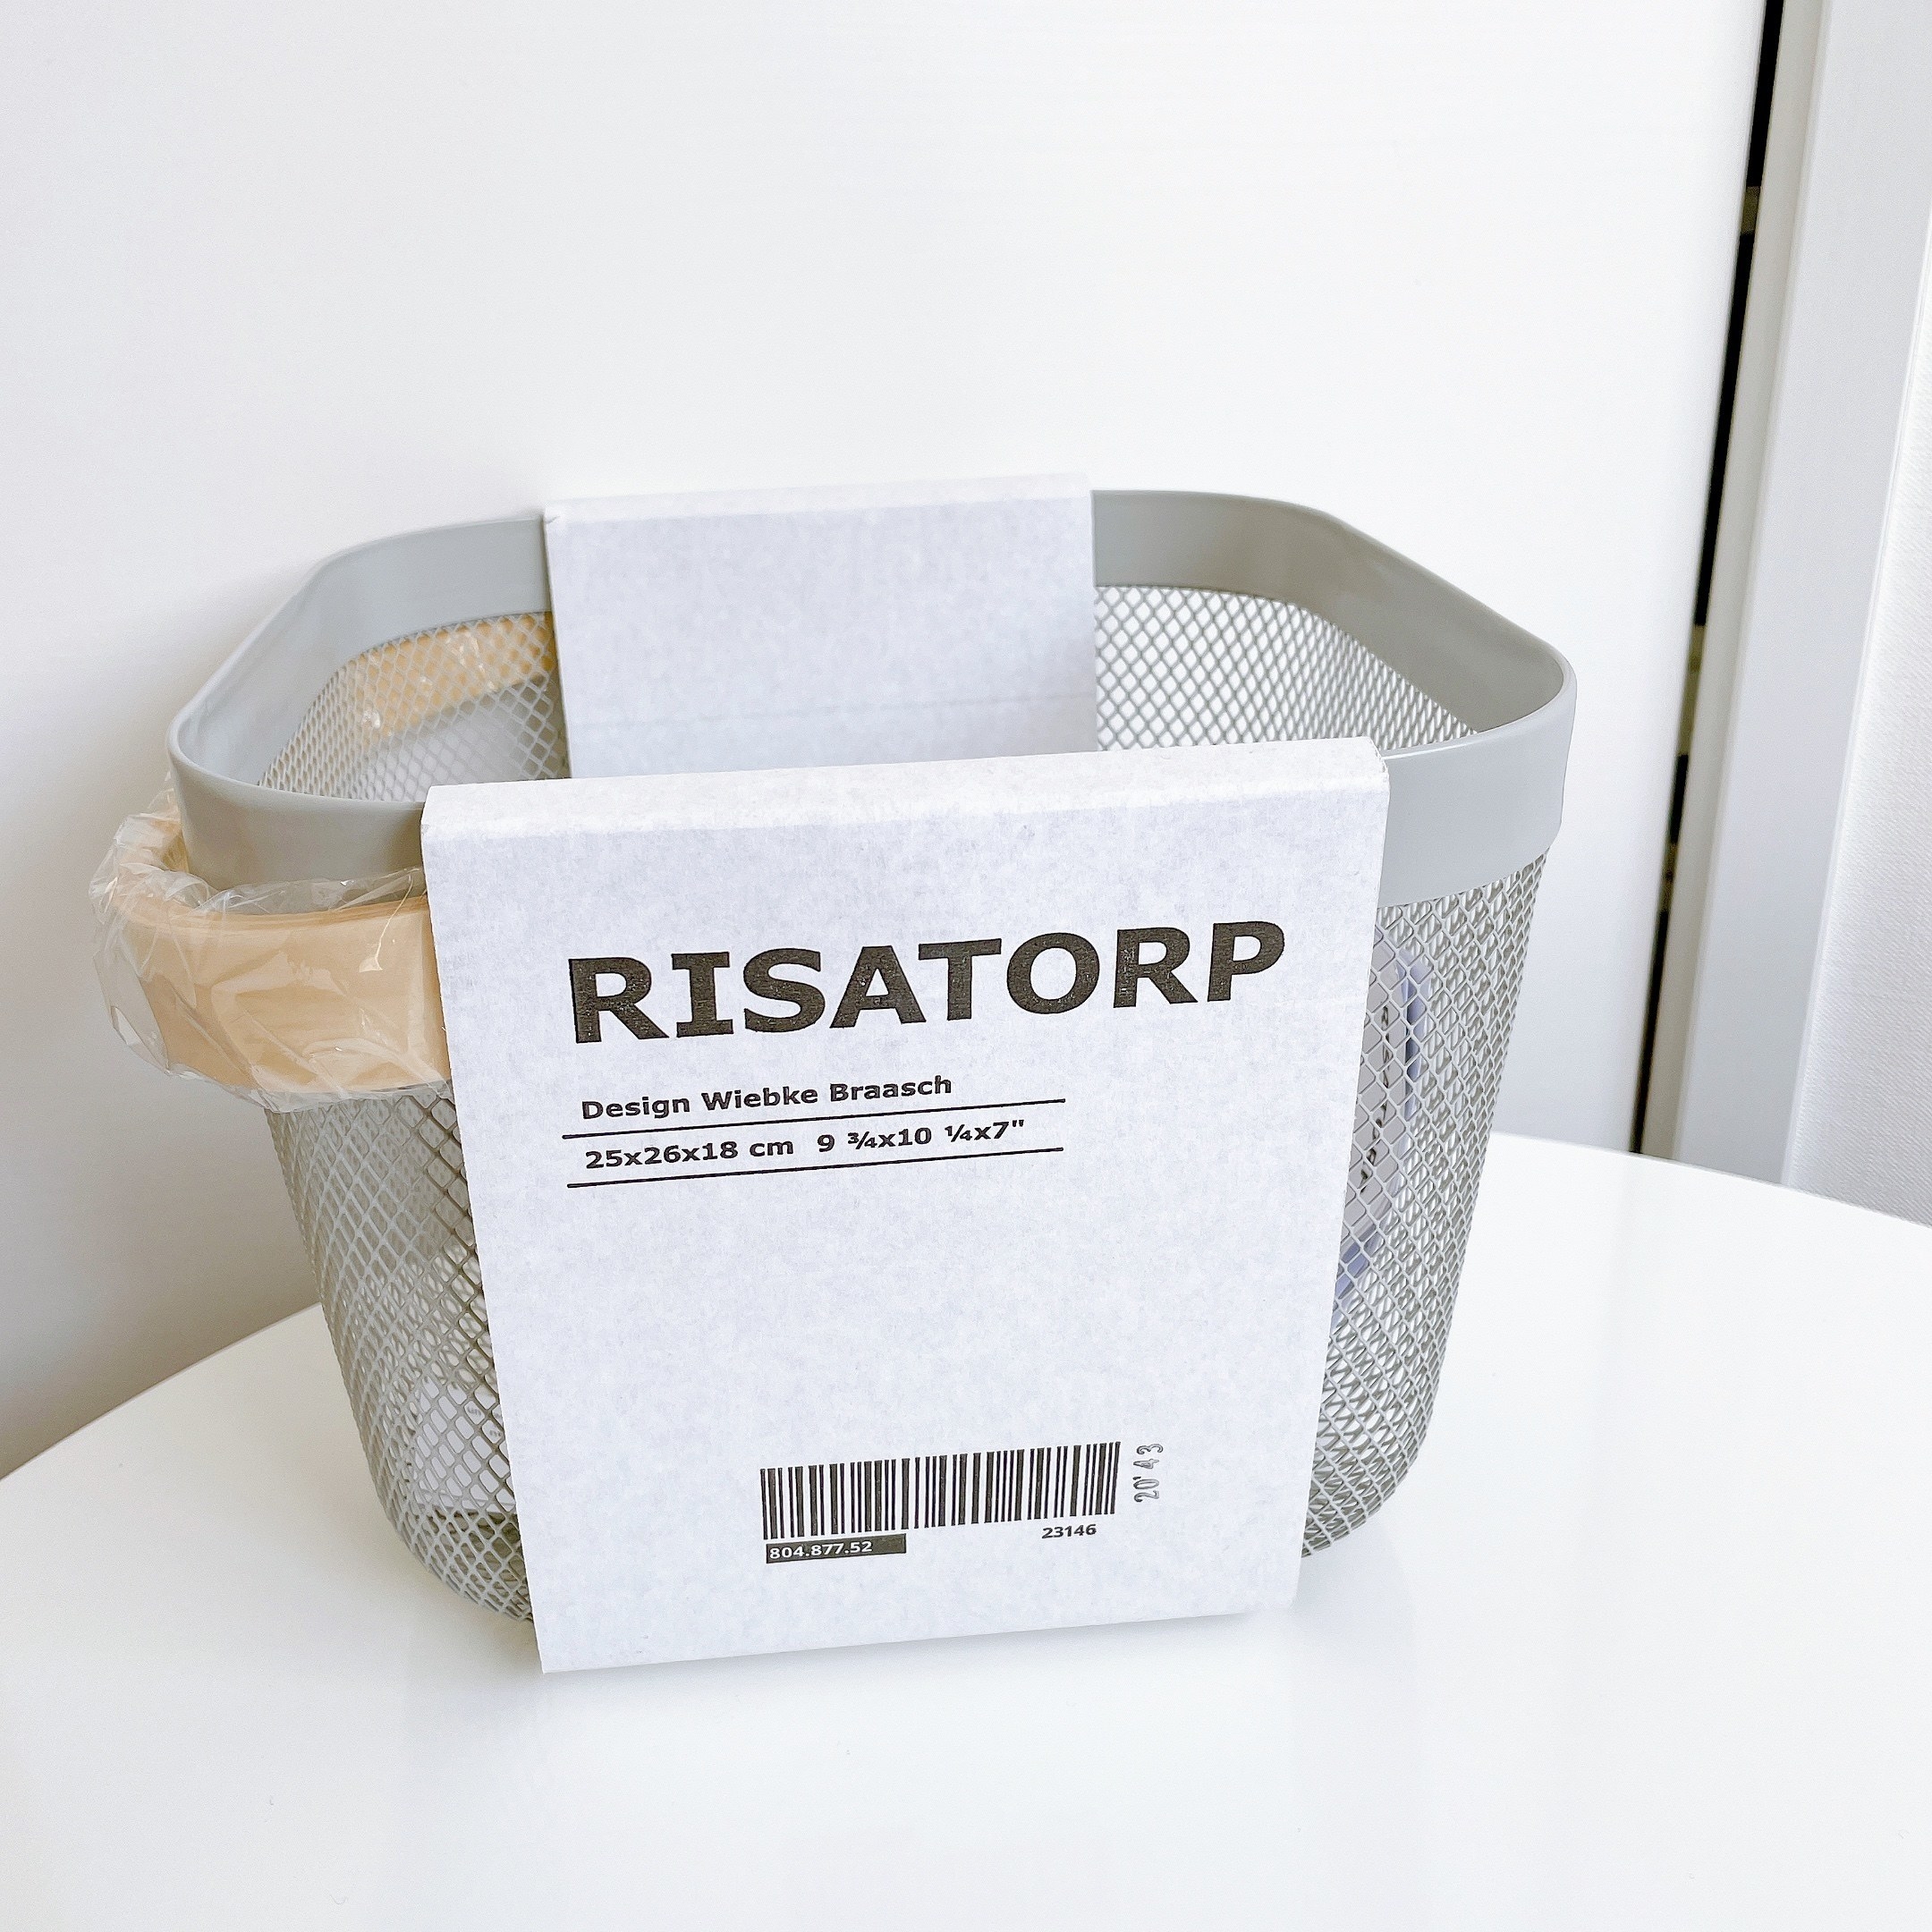 IKEA（イケア）のおすすめの収納アイテム「RISATORP リーサトルプ バスケット」